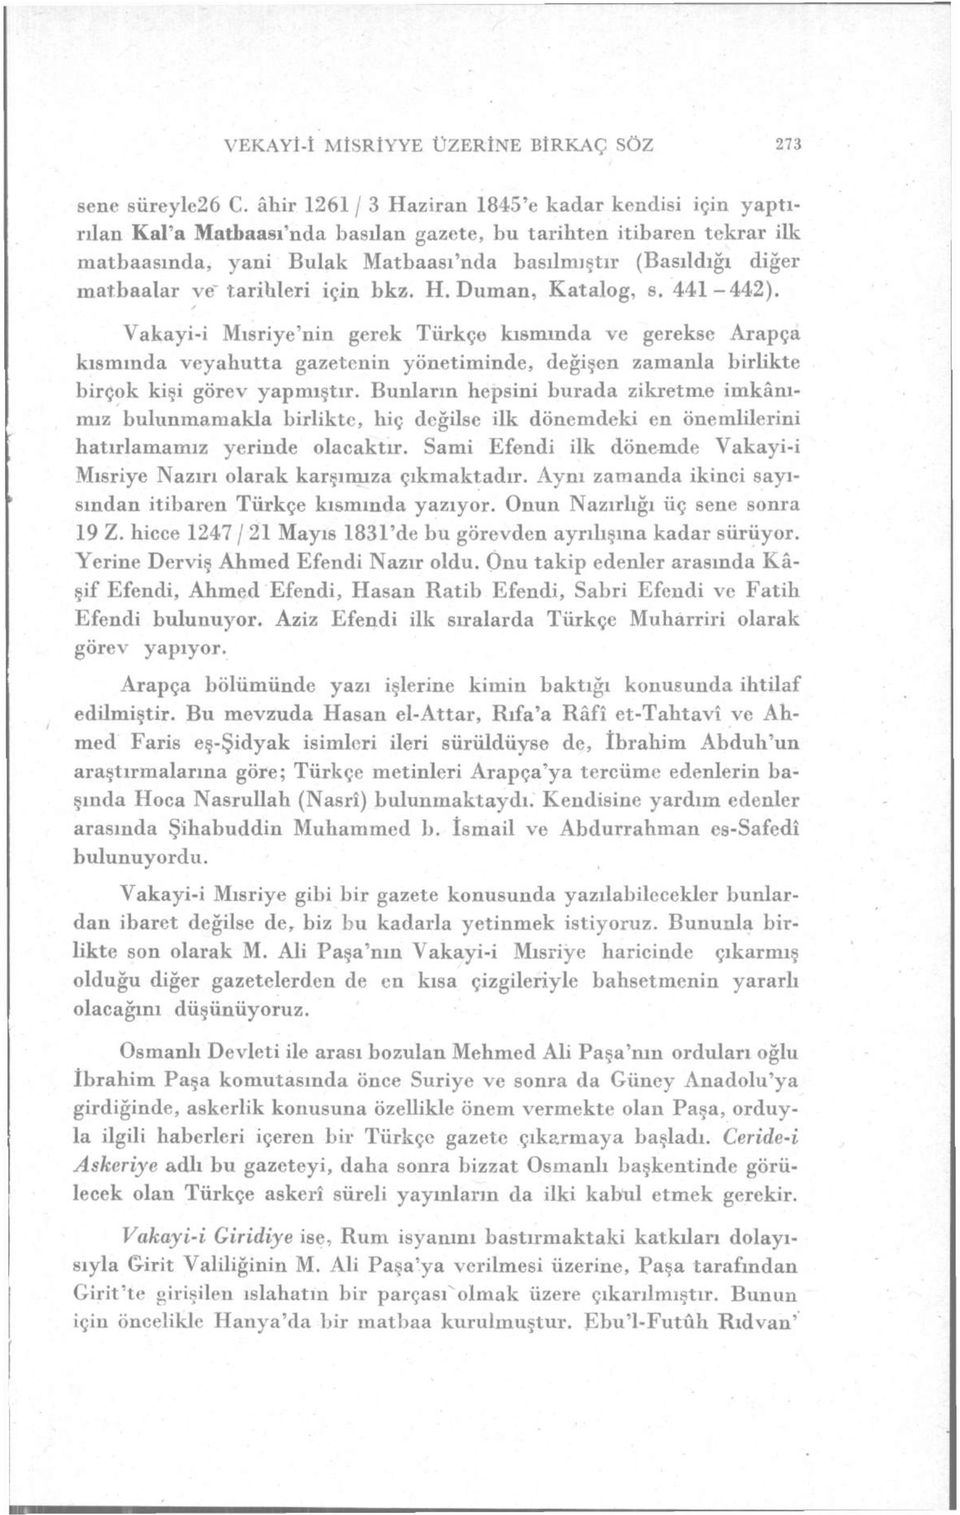 ve tarihleri için bkz. H. Duman, Katalog, s. 441-442).